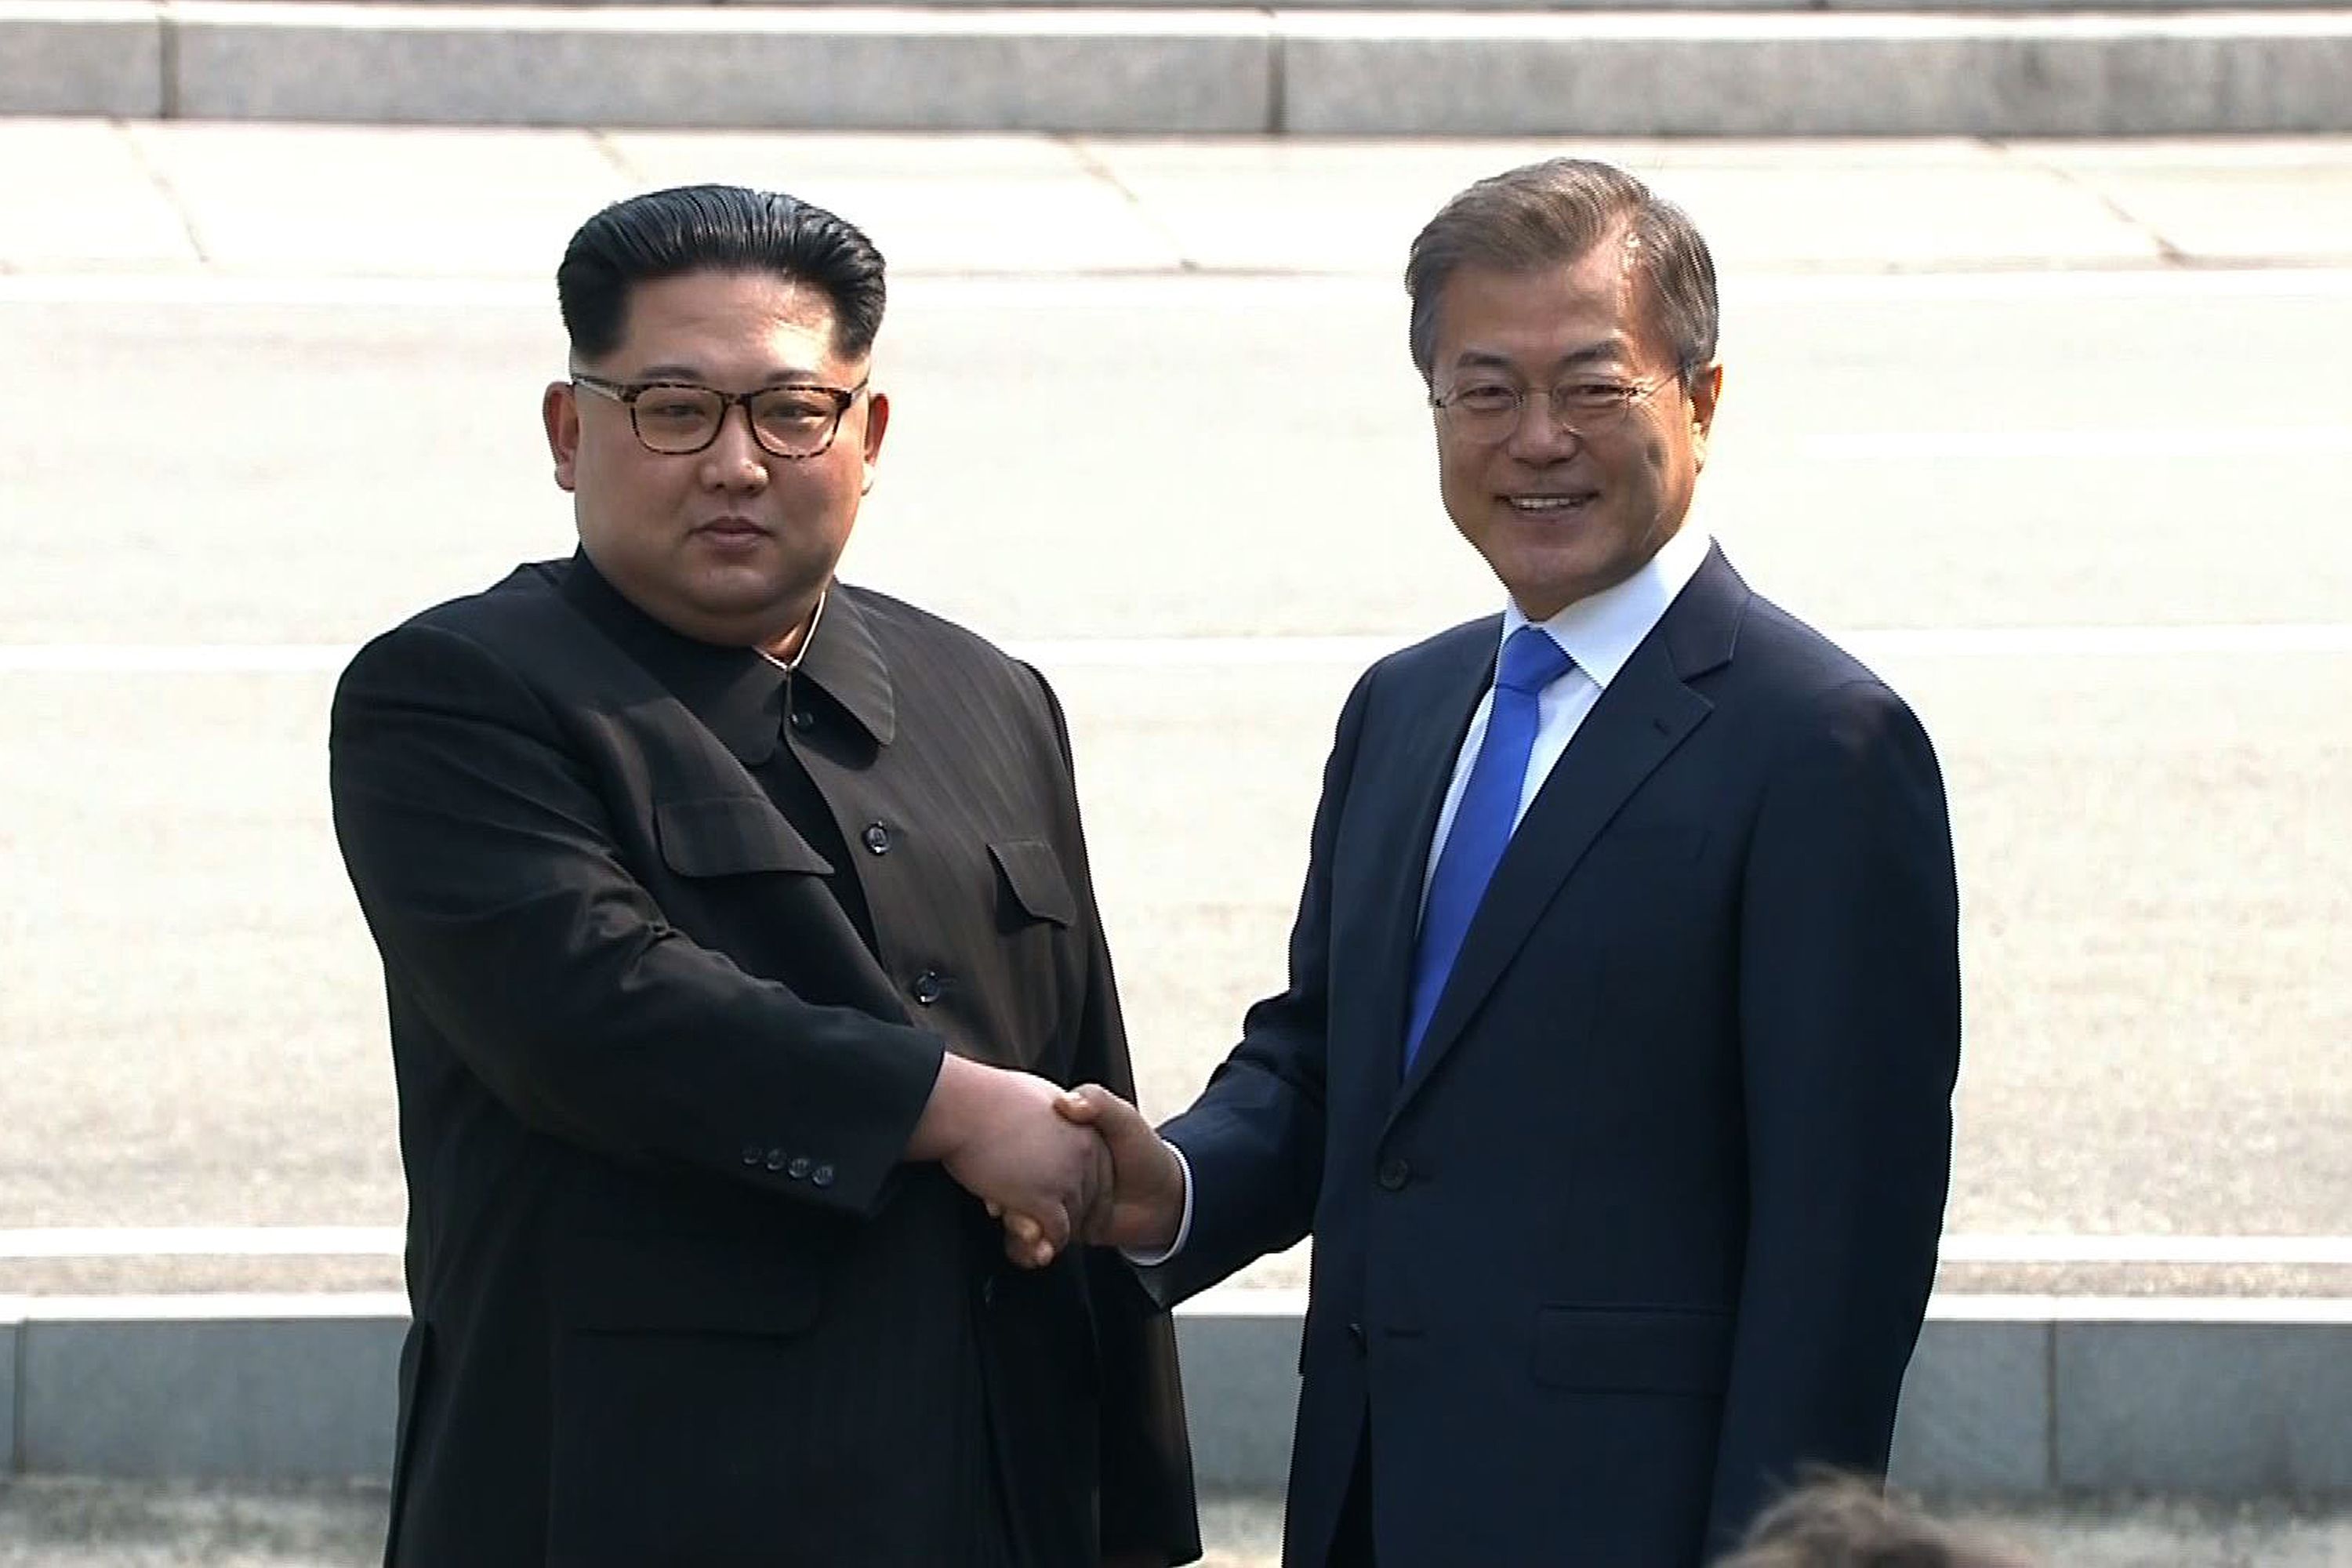 مصافحة  بين زعيمى الكوريتين